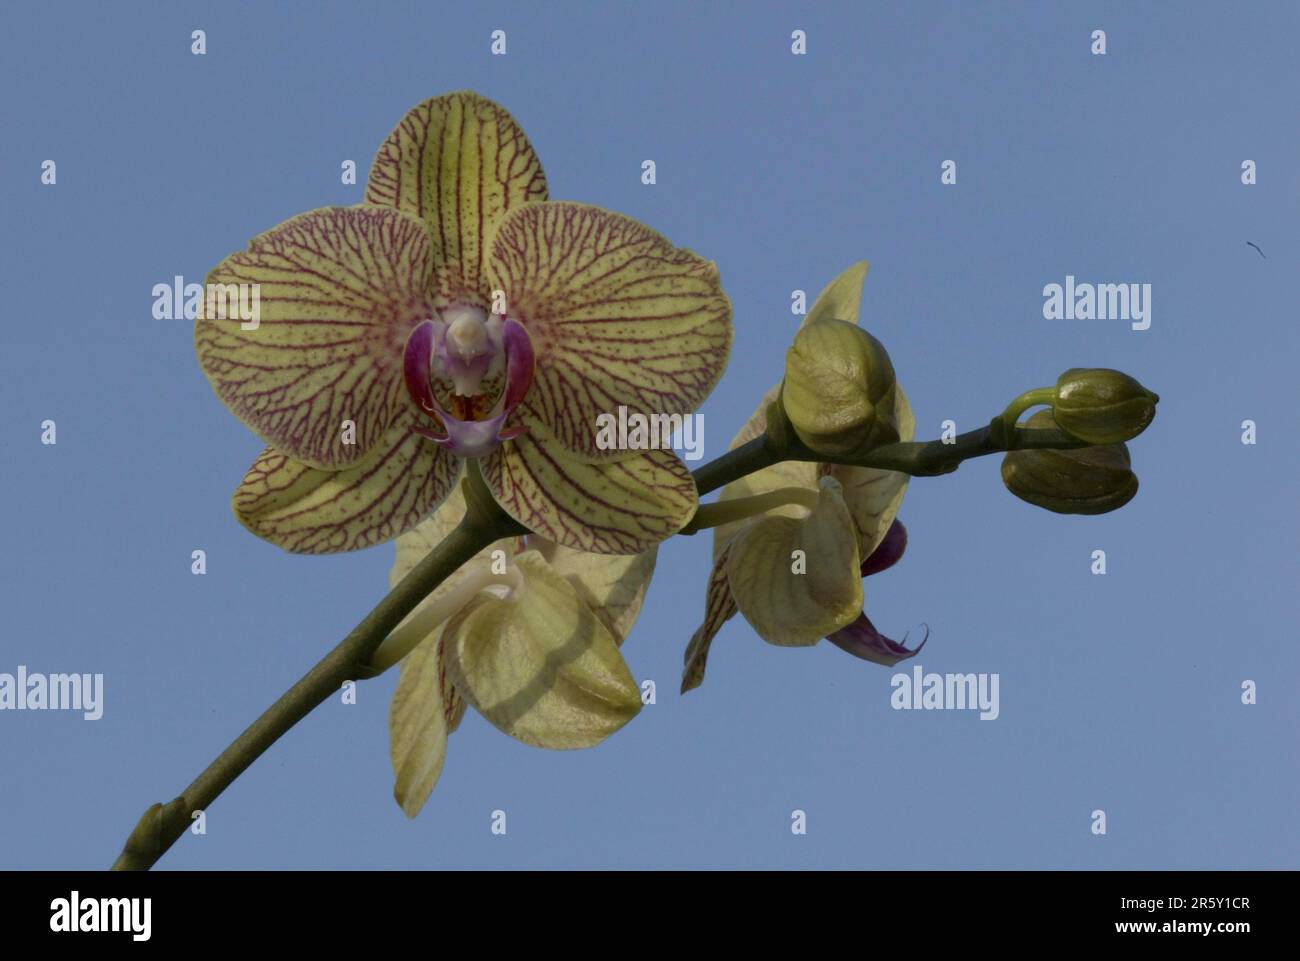 Fiori di orchidee, fiori di orchidee, fiori di orchidee (Phalaenopsis), orchidee, piante ornamentali, fiori ornamentali, formato paesaggistico, orizzontale Foto Stock